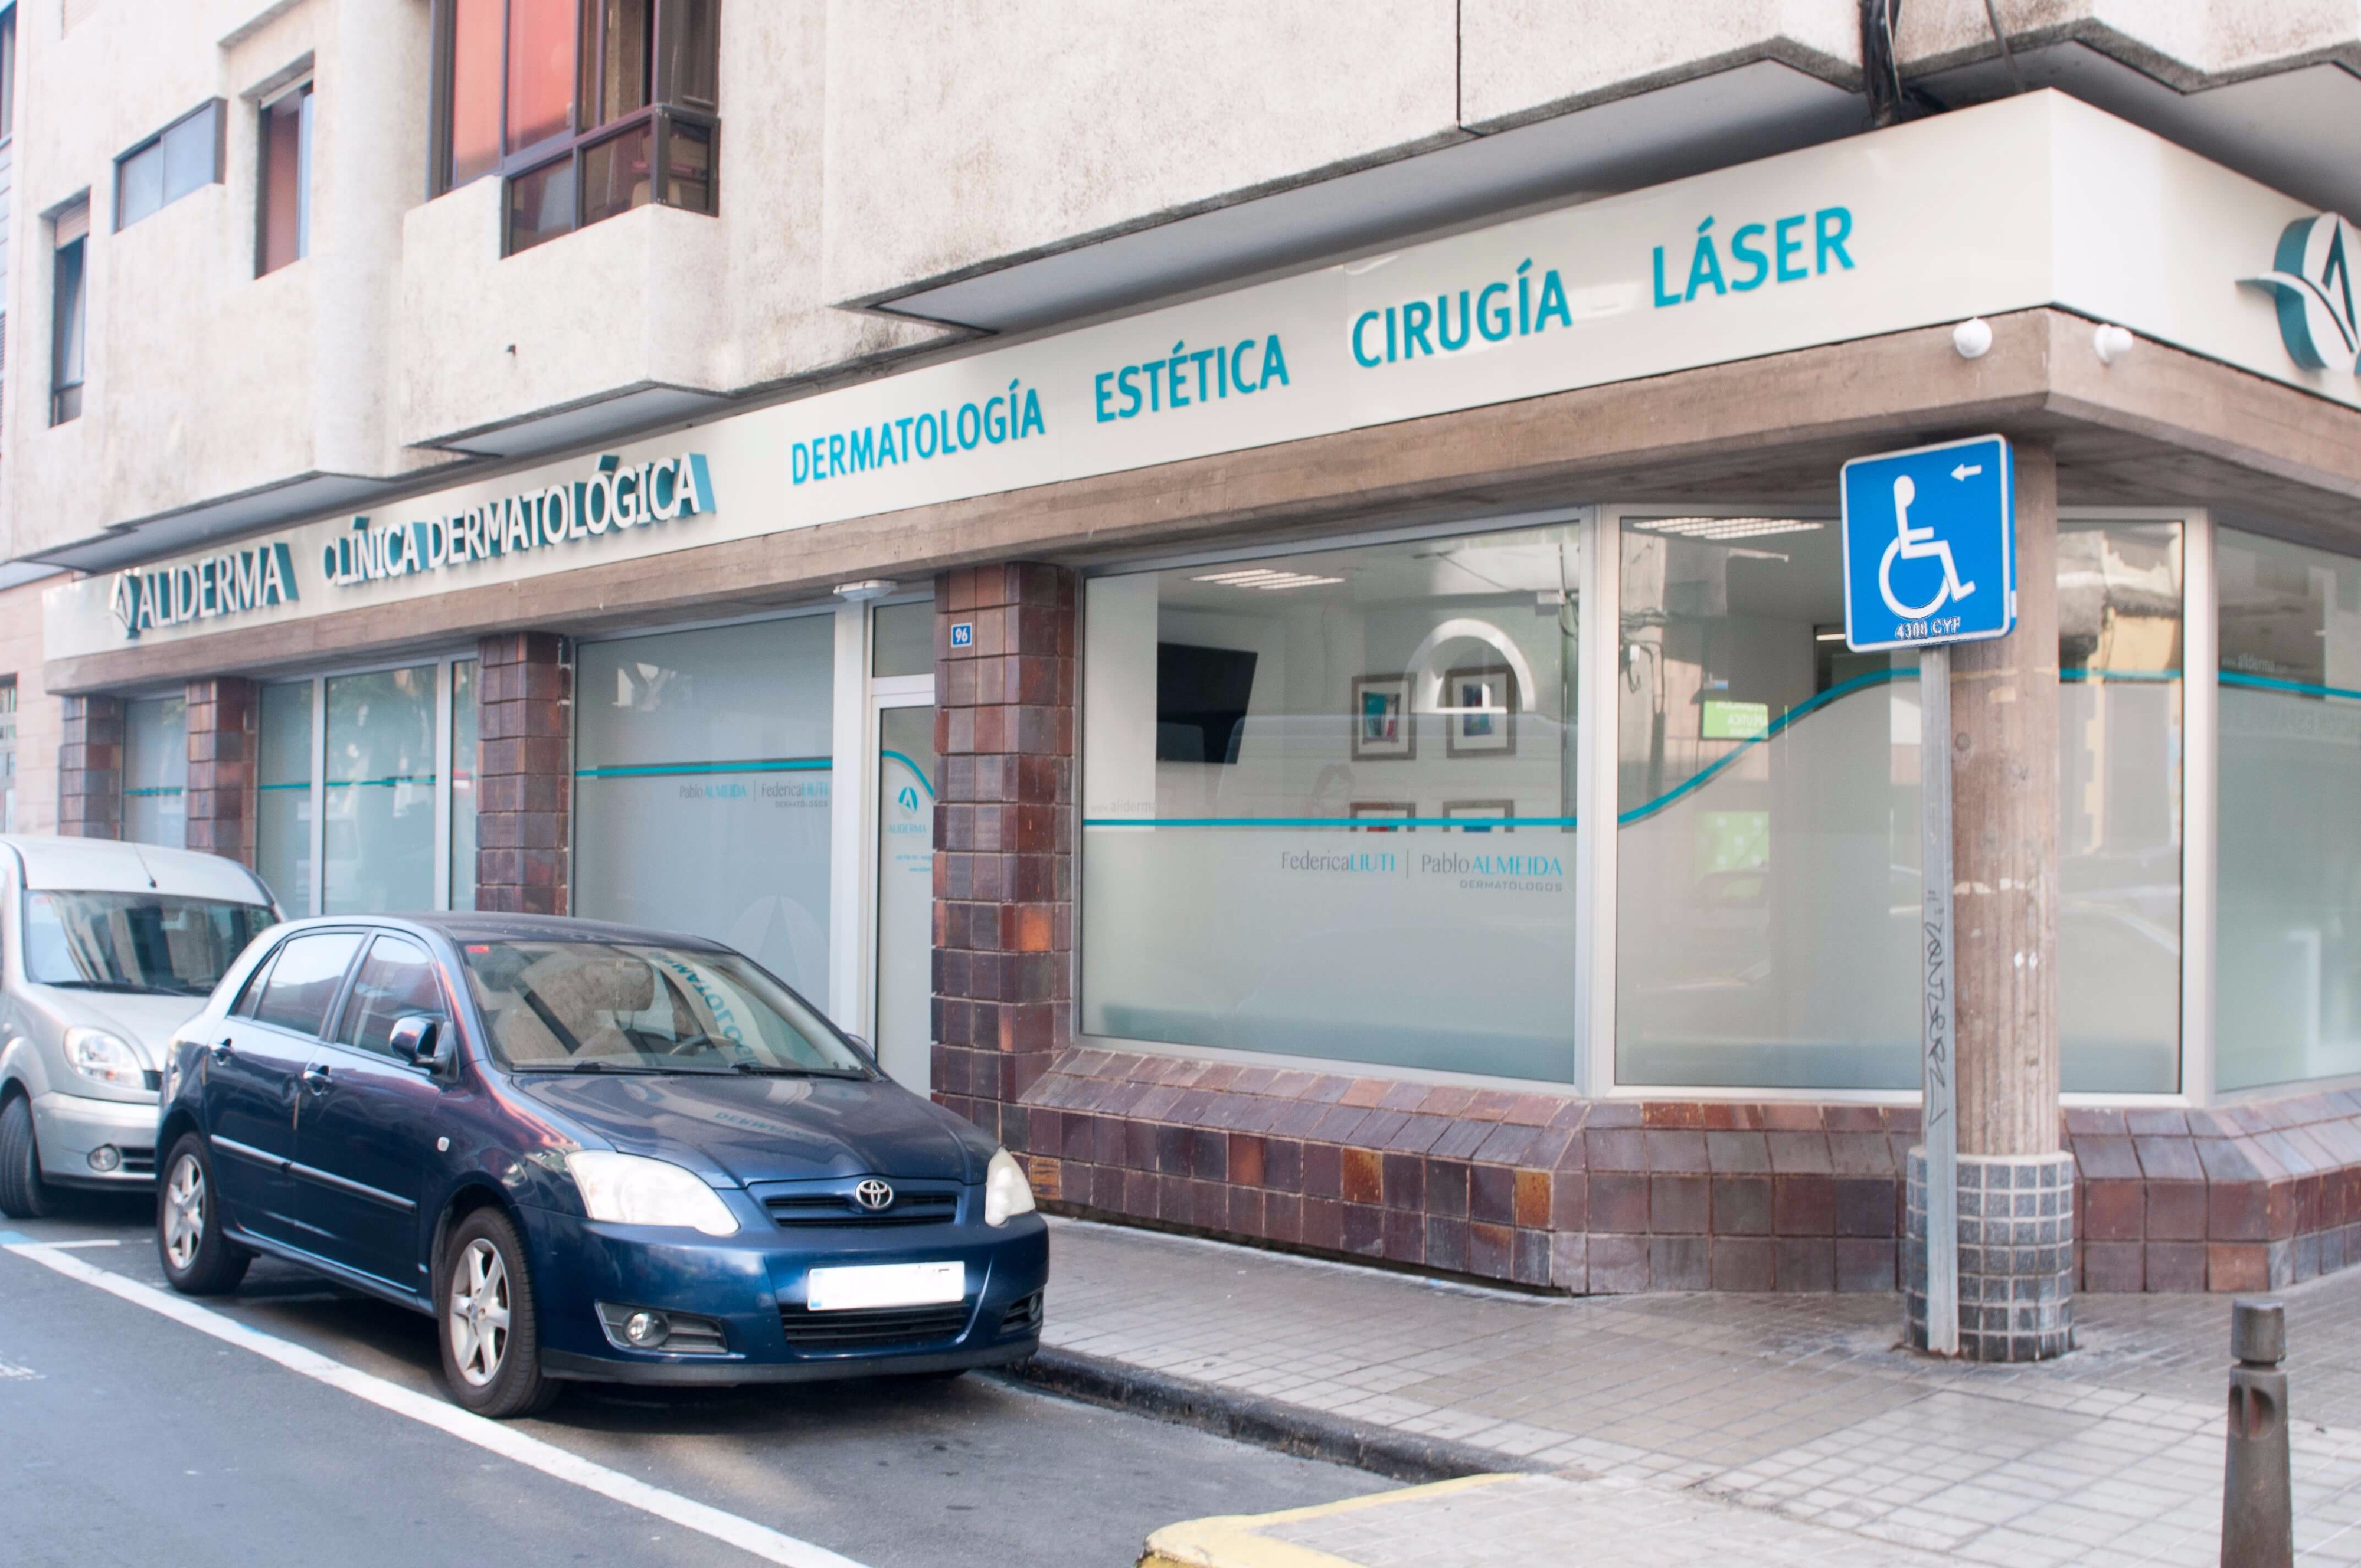 labio escribir una carta espontáneo Clinica dermatológica Las Palmas|Aliderma